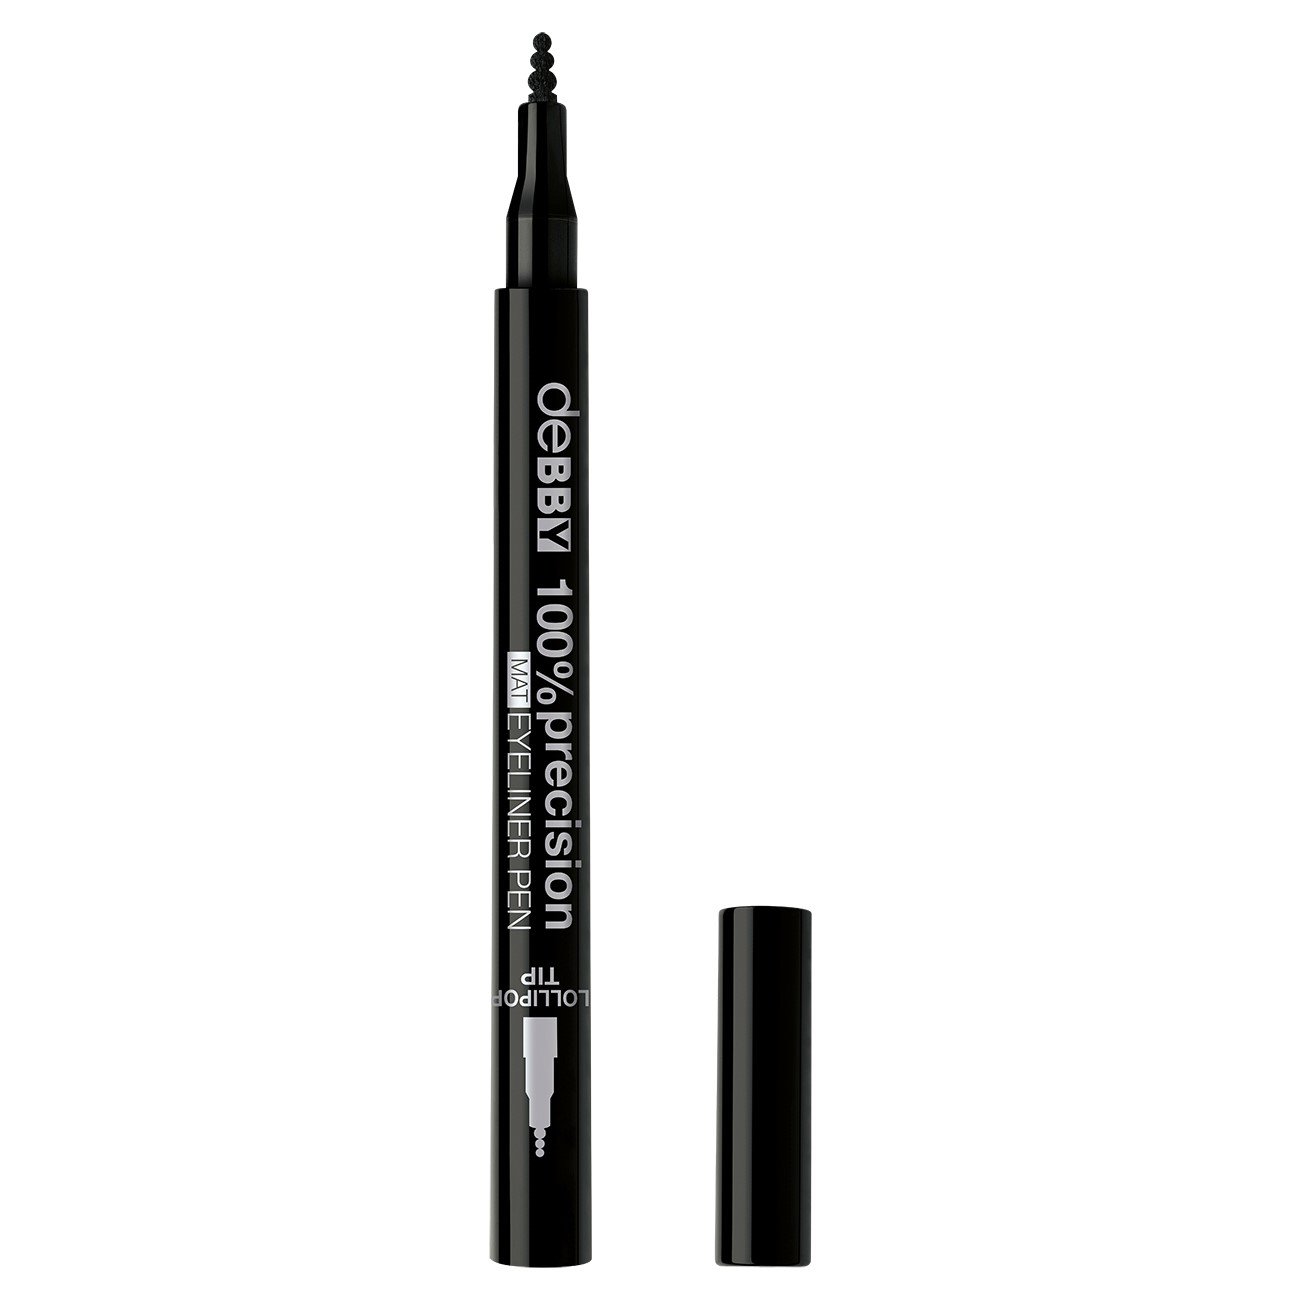 Підводка для очей Debby 100% Precision Mat Eyeliner Pen (відтінок 1), 1,2 мл - фото 1